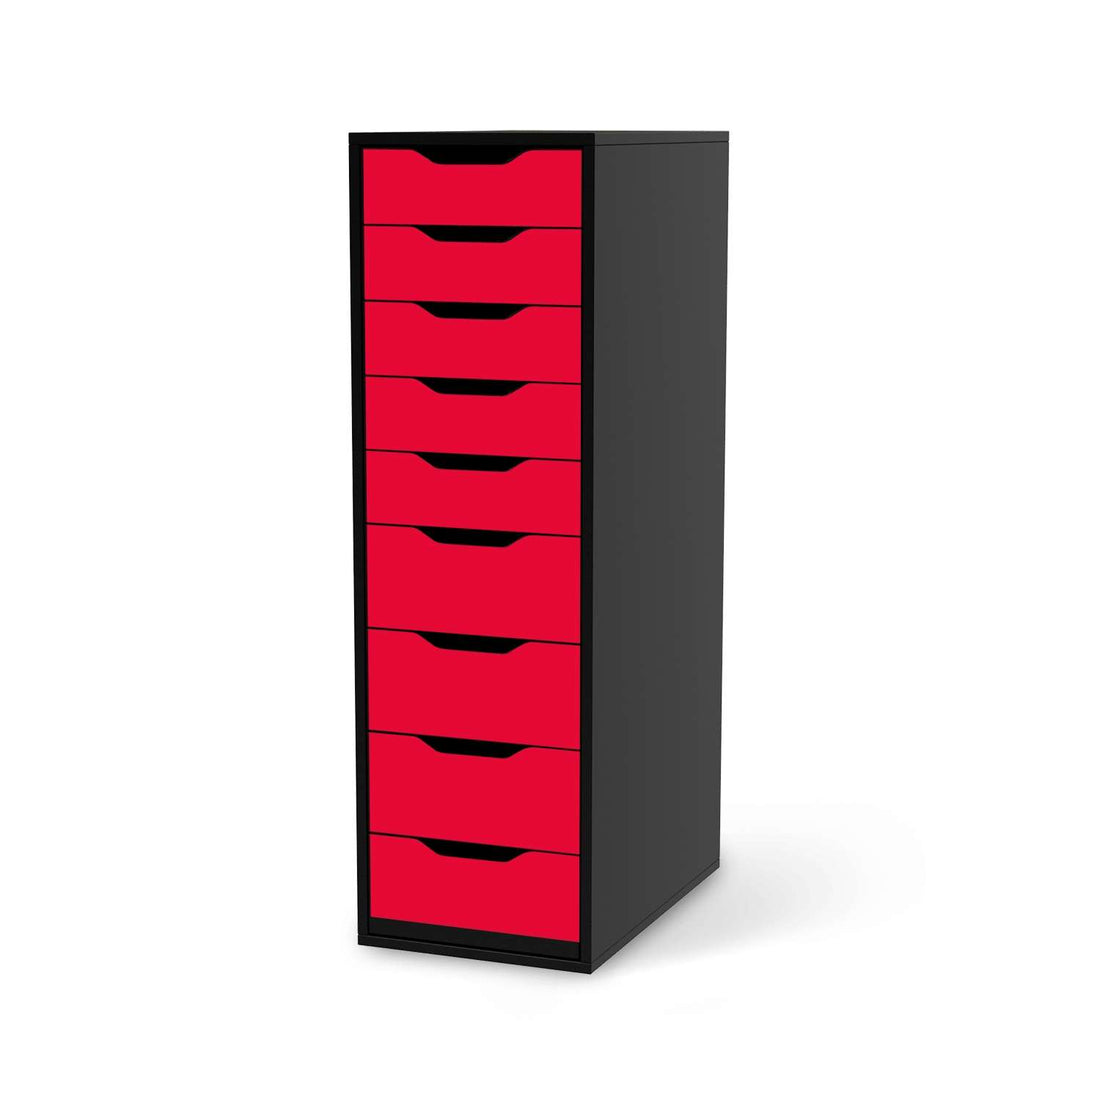 Folie für Möbel Rot Light - IKEA Alex 9 Schubladen - schwarz